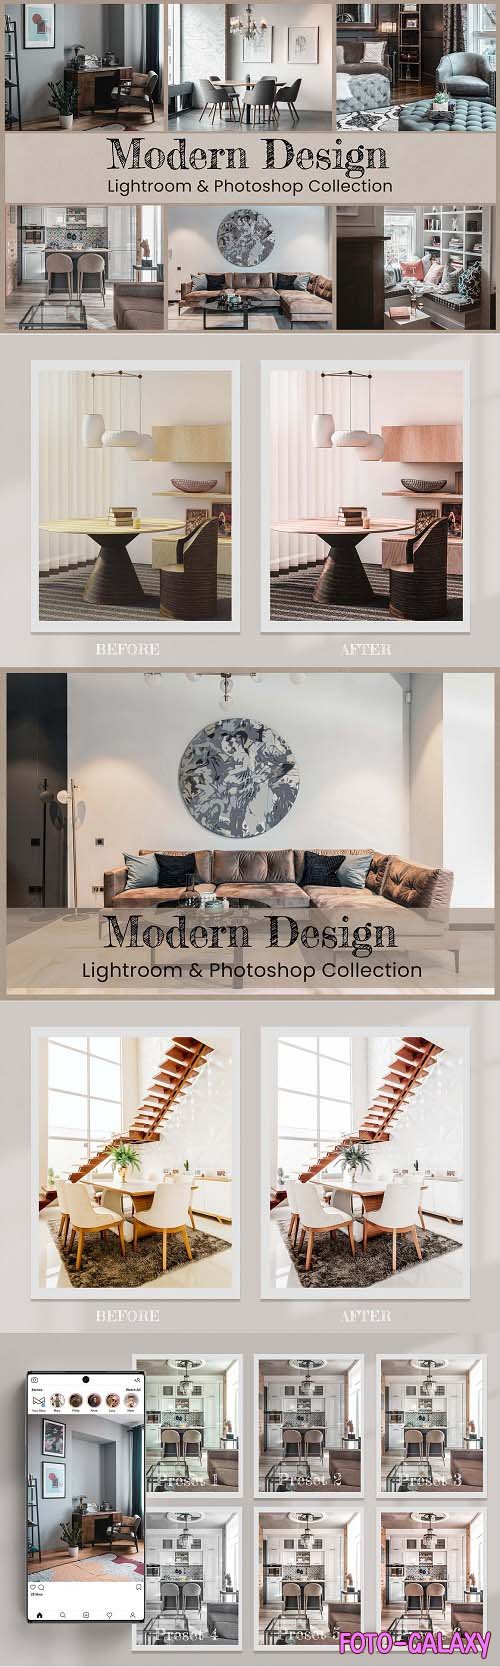 Modern Design Lightroom Photoshop - 6540863